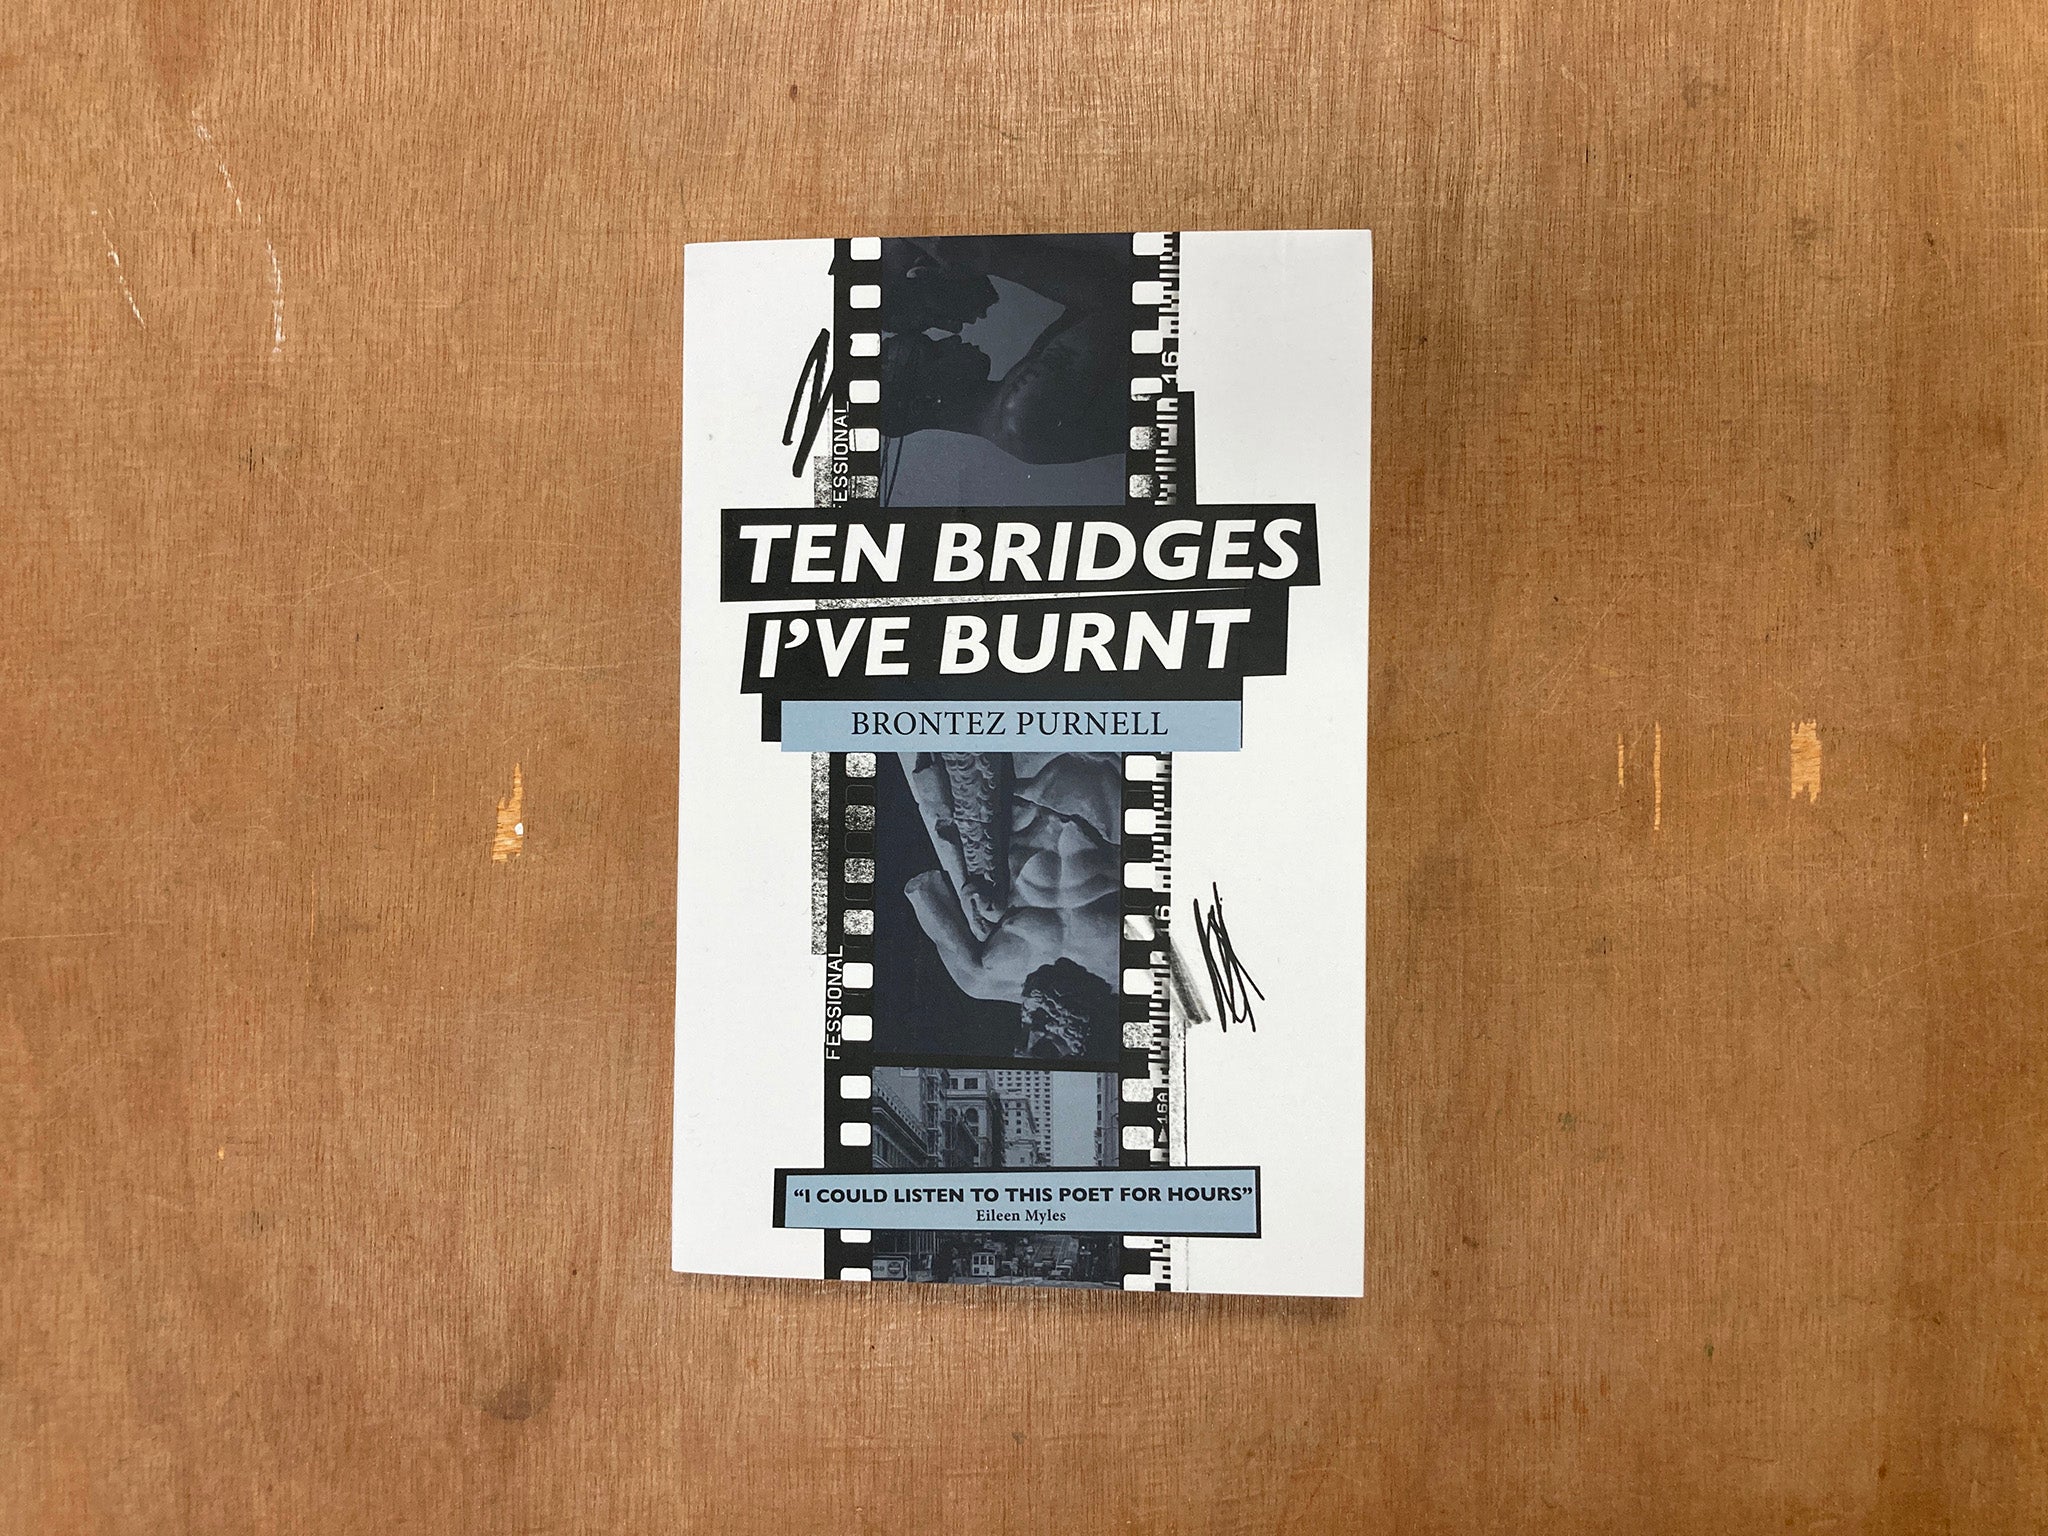 TEN BRIDGES I’VE BURNT by Brontez Purnell